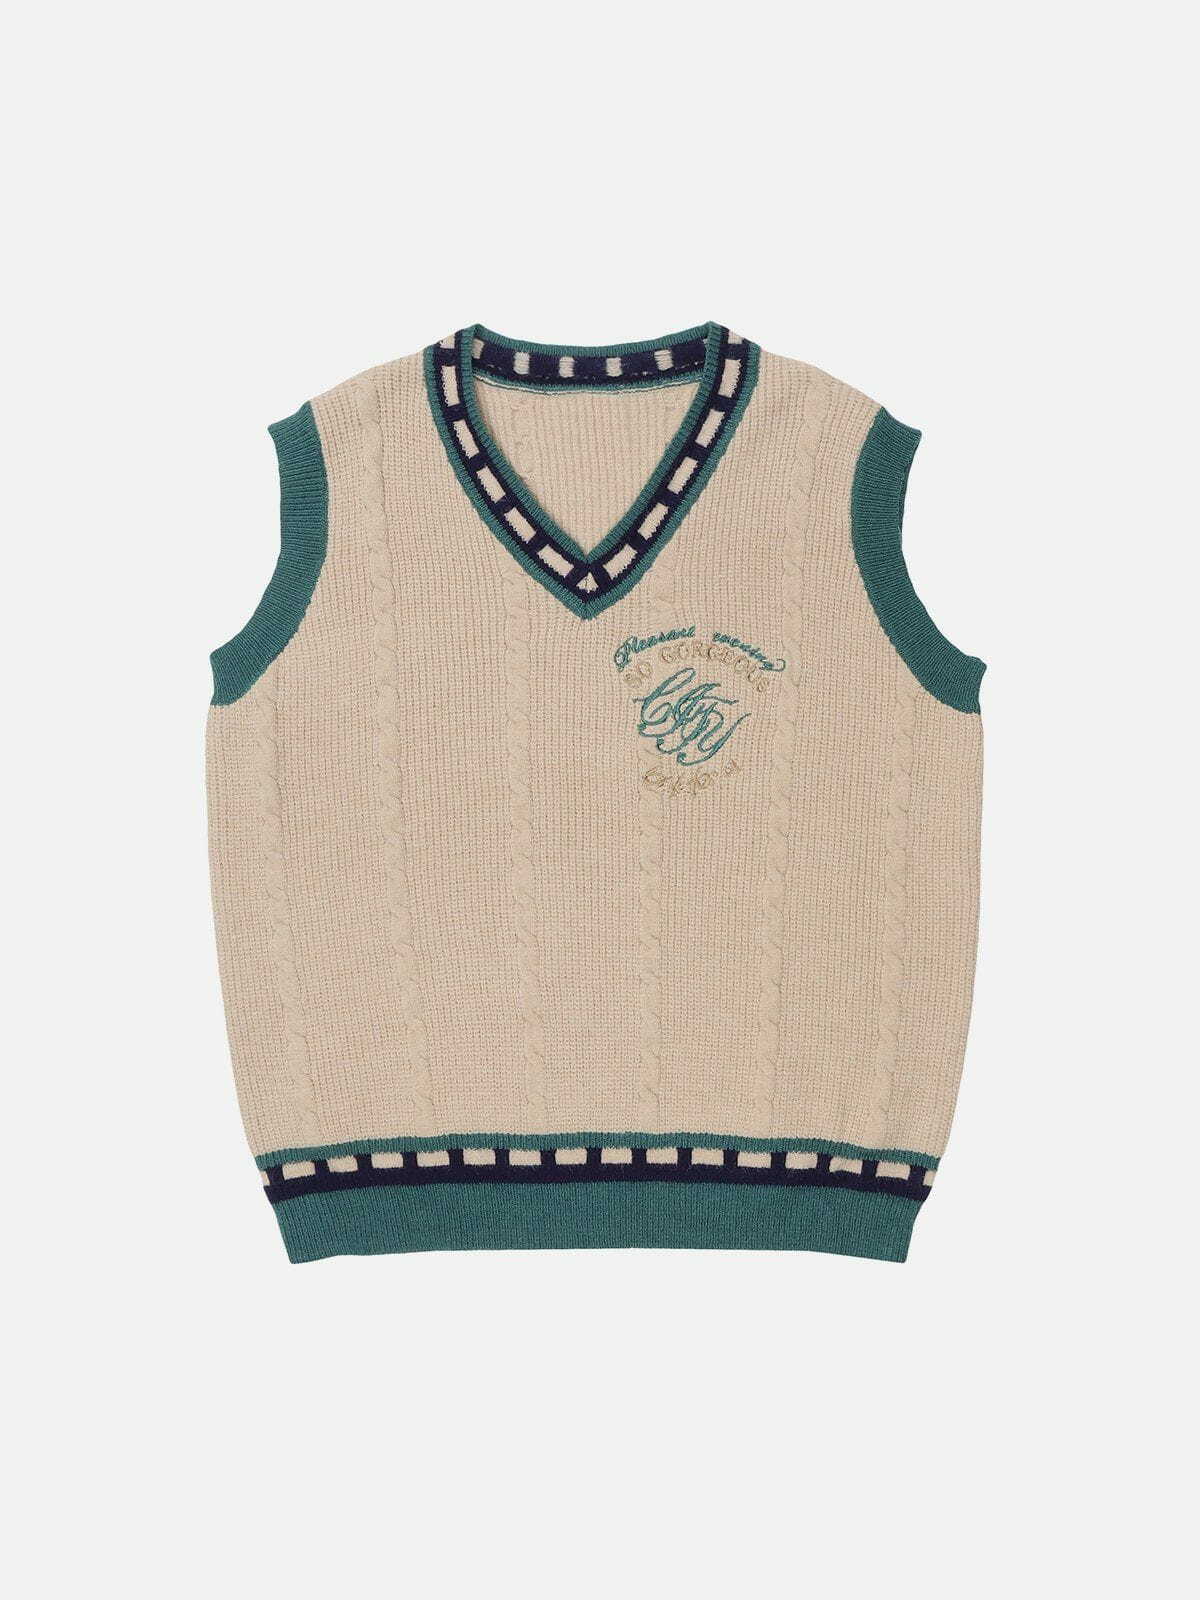 embroidered patchwork sweater vest urban fashion statement 6627